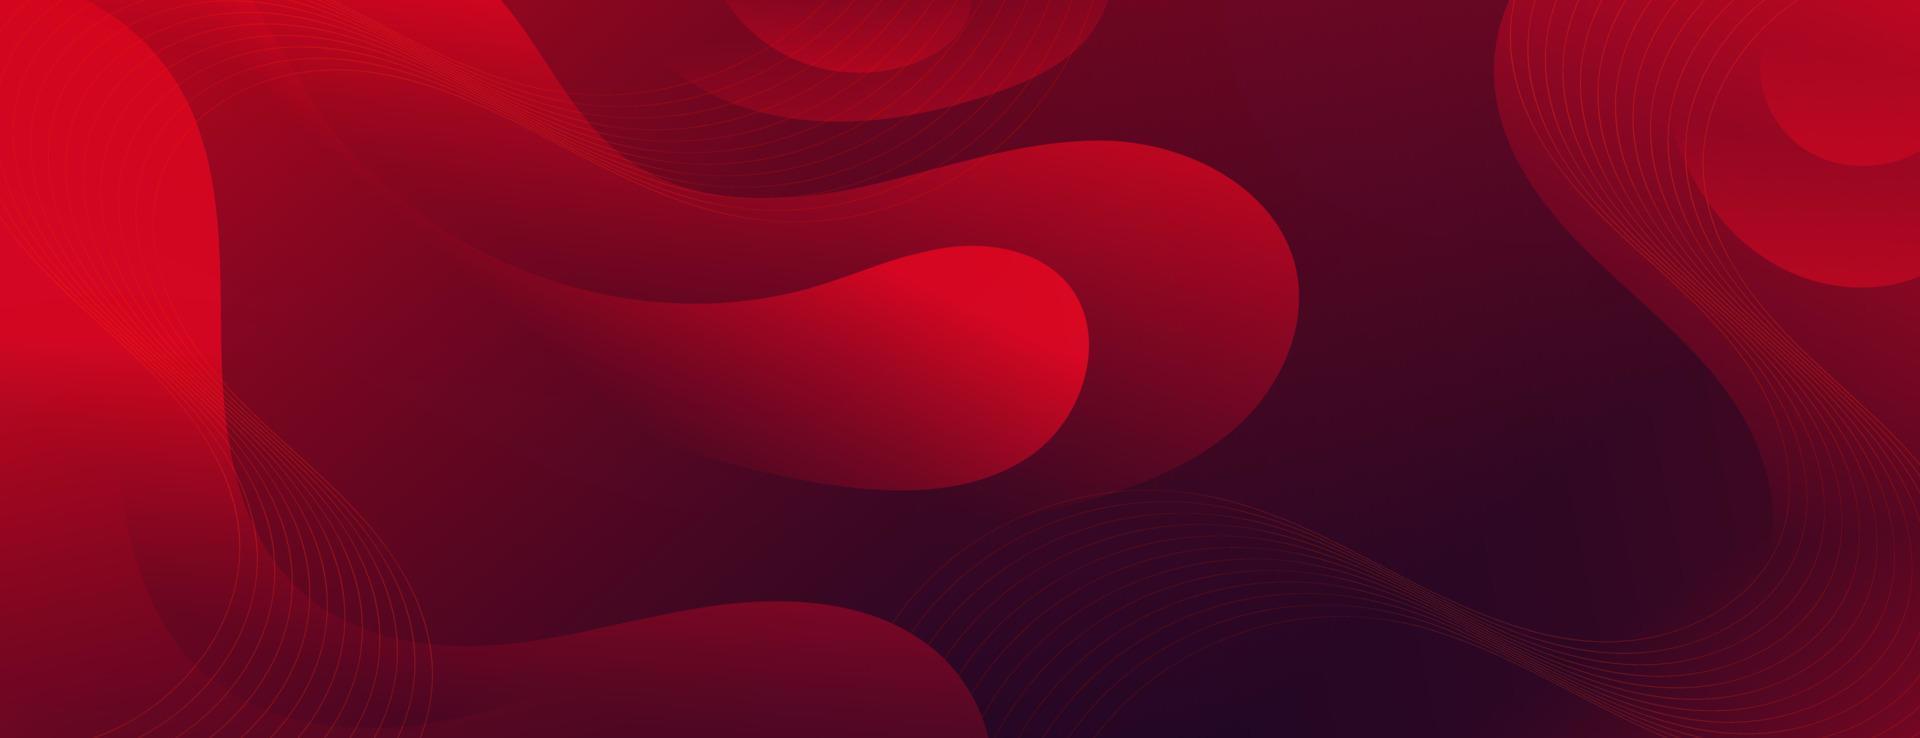 abstrakte rote flüssigkeitswellenfahnenschablone vektor